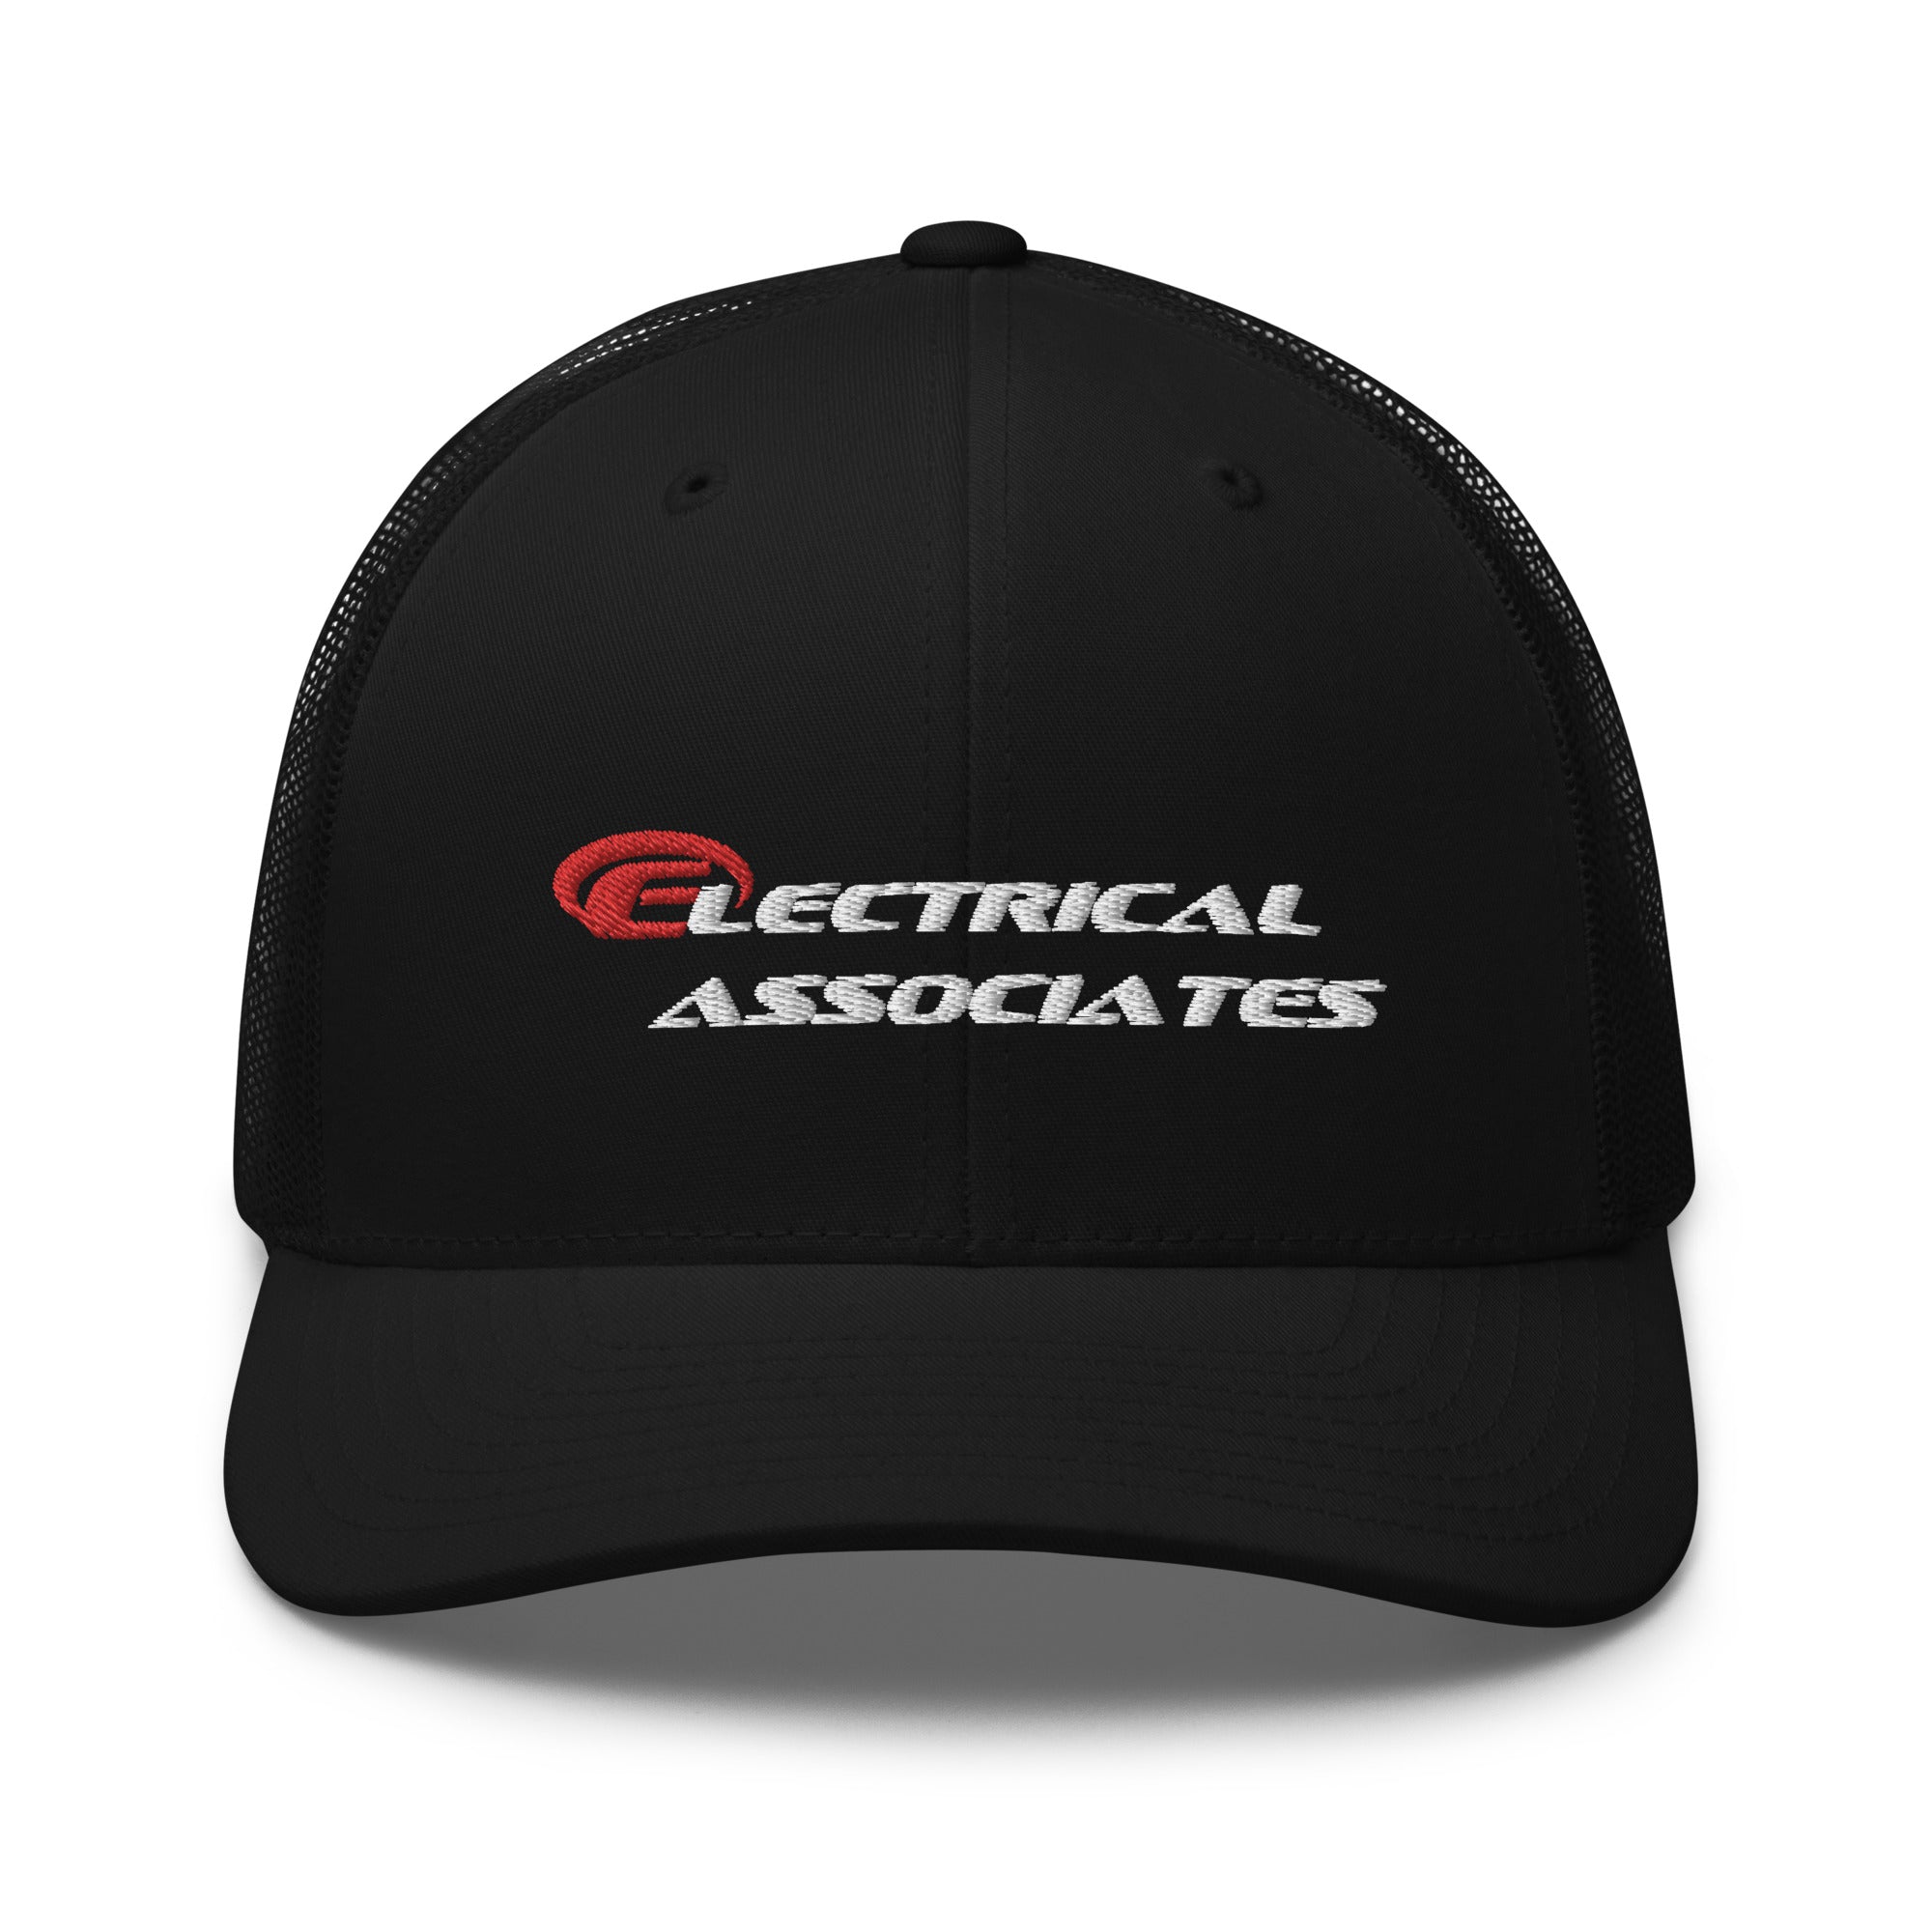 Electrical Associates Trucker Cap